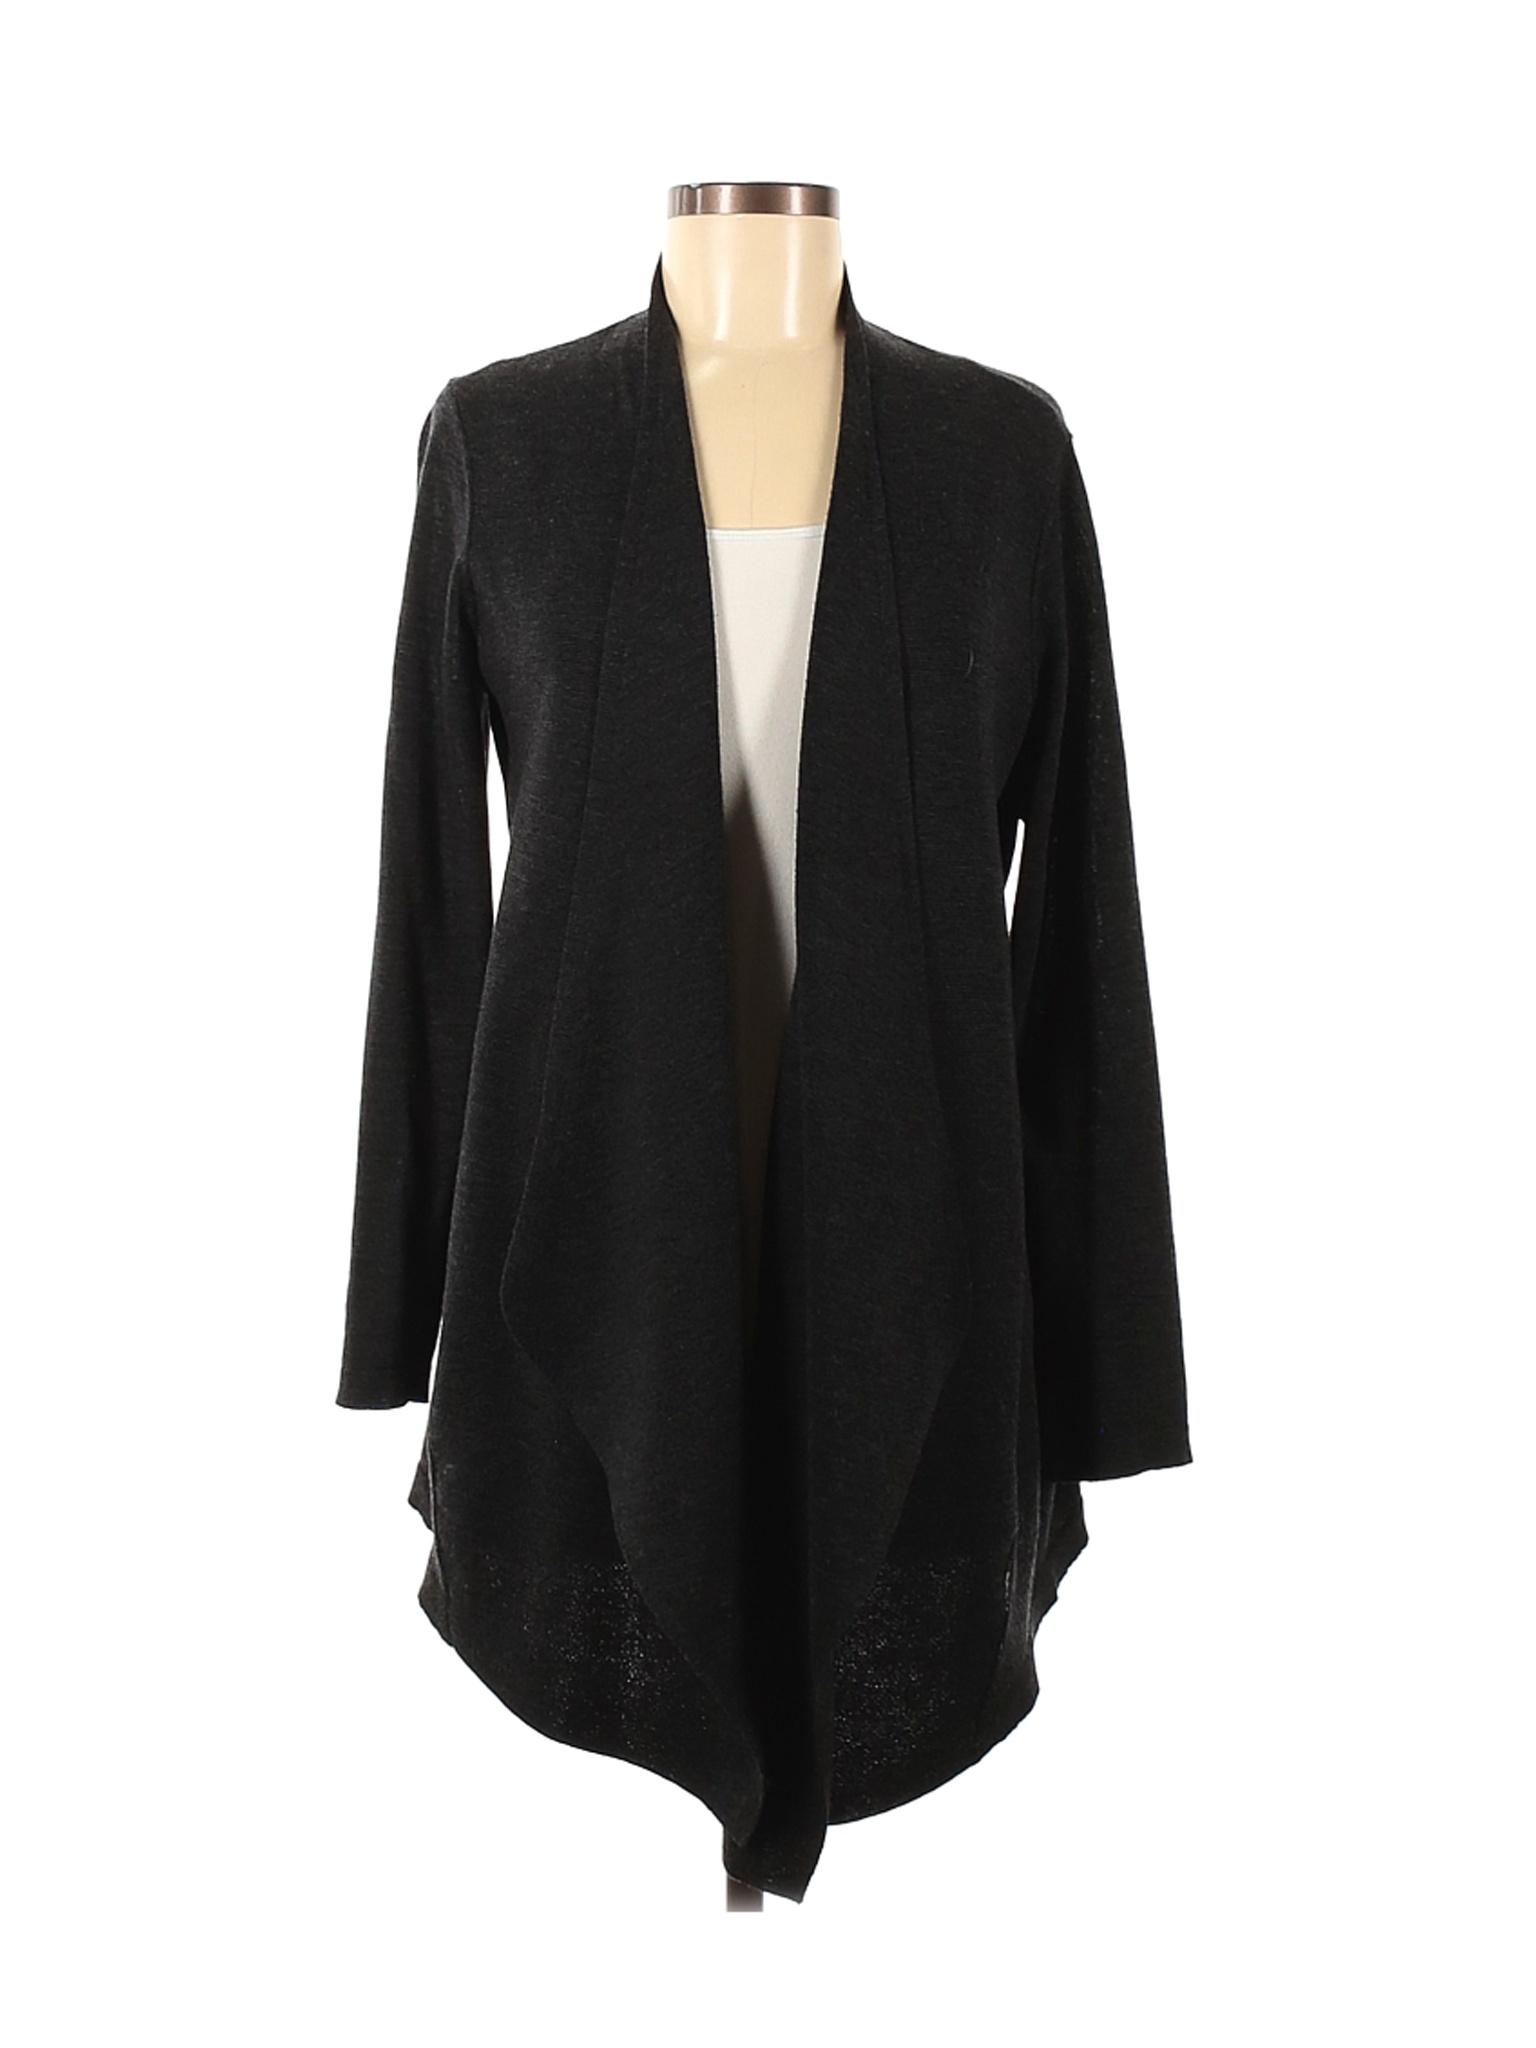 Eileen Fisher Women Black Wool Cardigan M | eBay